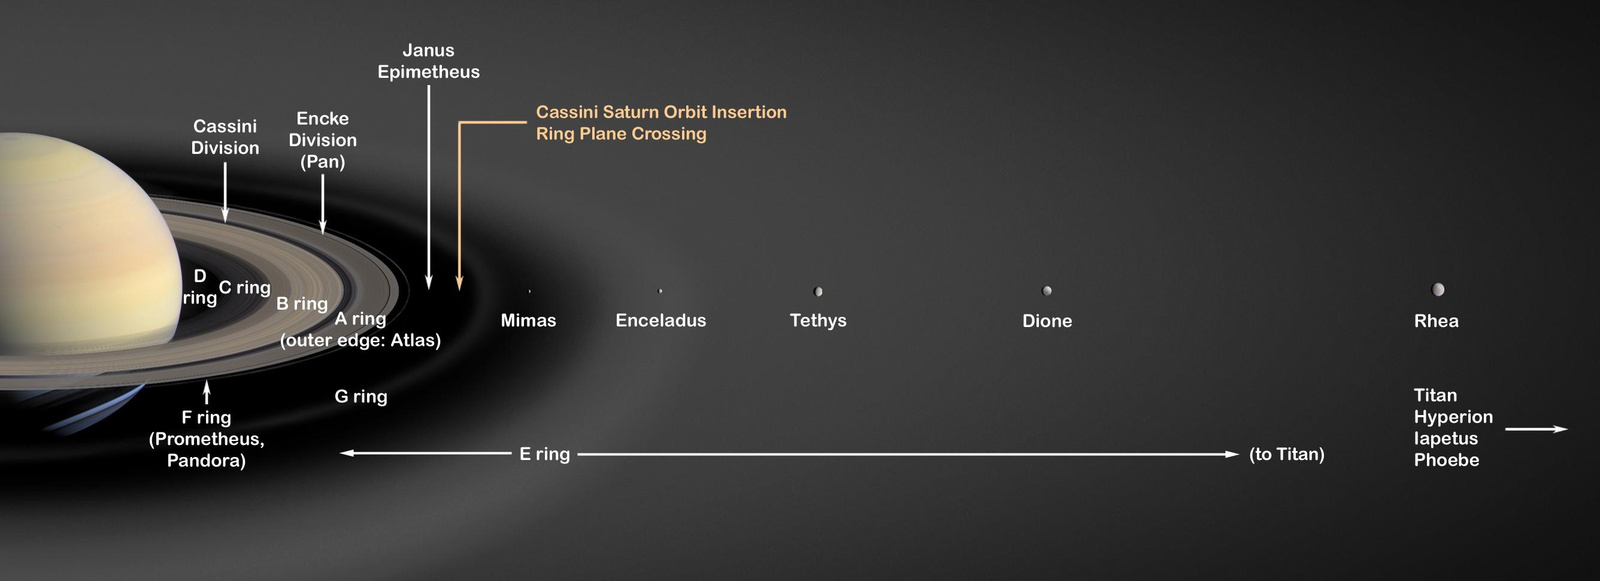 Saturn's Rings PIA03550